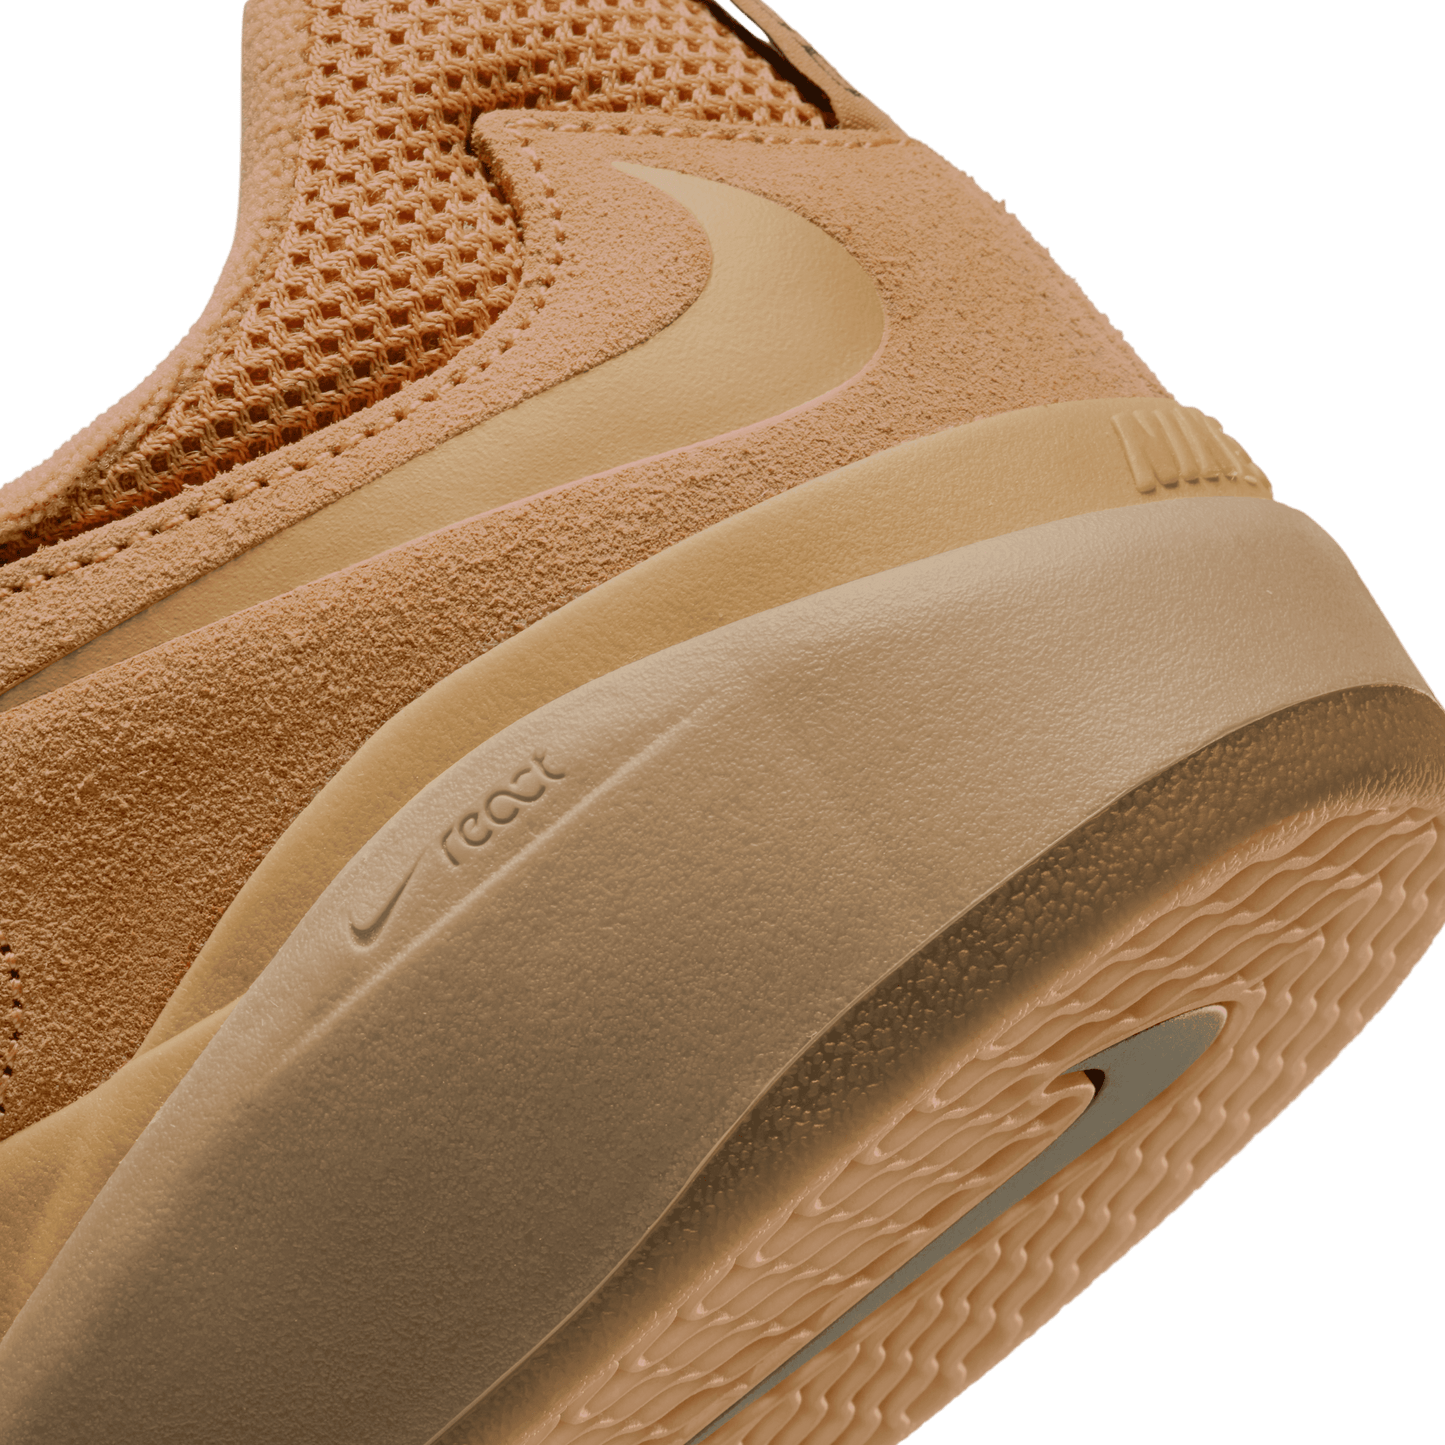 Nike SB Ishod Flax/Wheat/Flax/Gum Light Brown